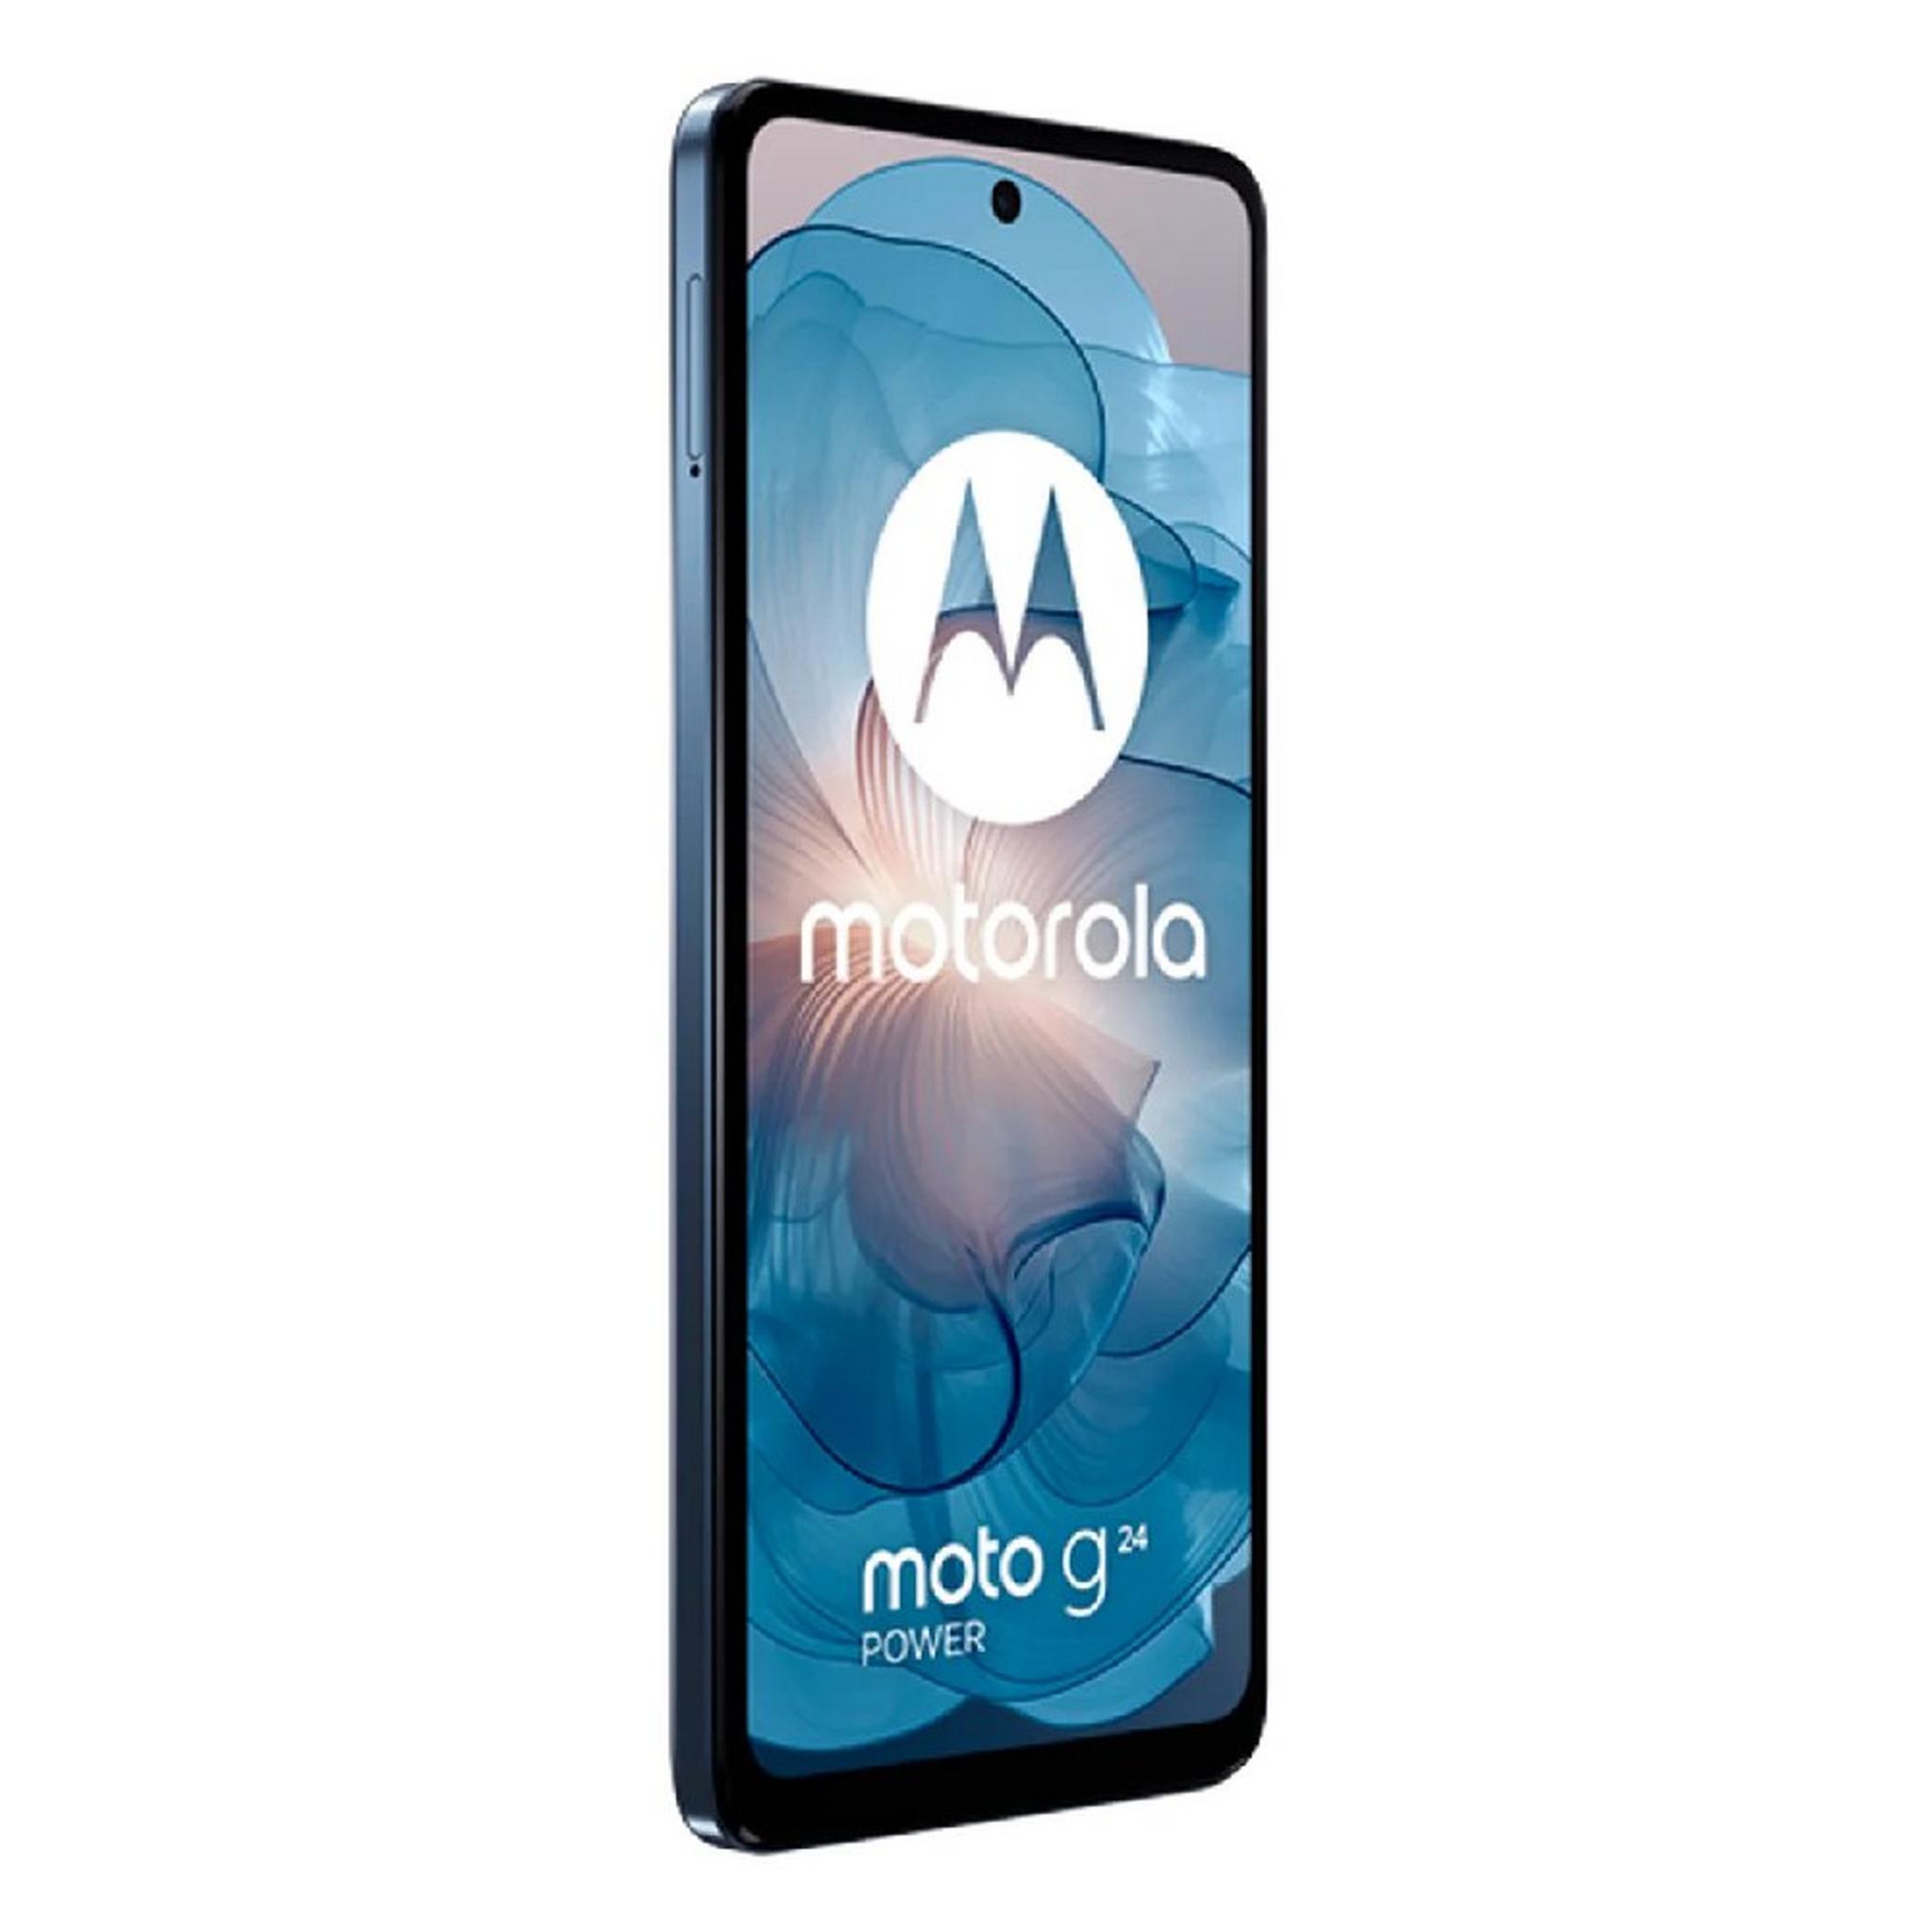 هاتف موتو جي 24 باور من موتورولا، شاشة 6.56 بوصة، رام 8 جيجابايت، 256 جيجابايت – أزرق داكن